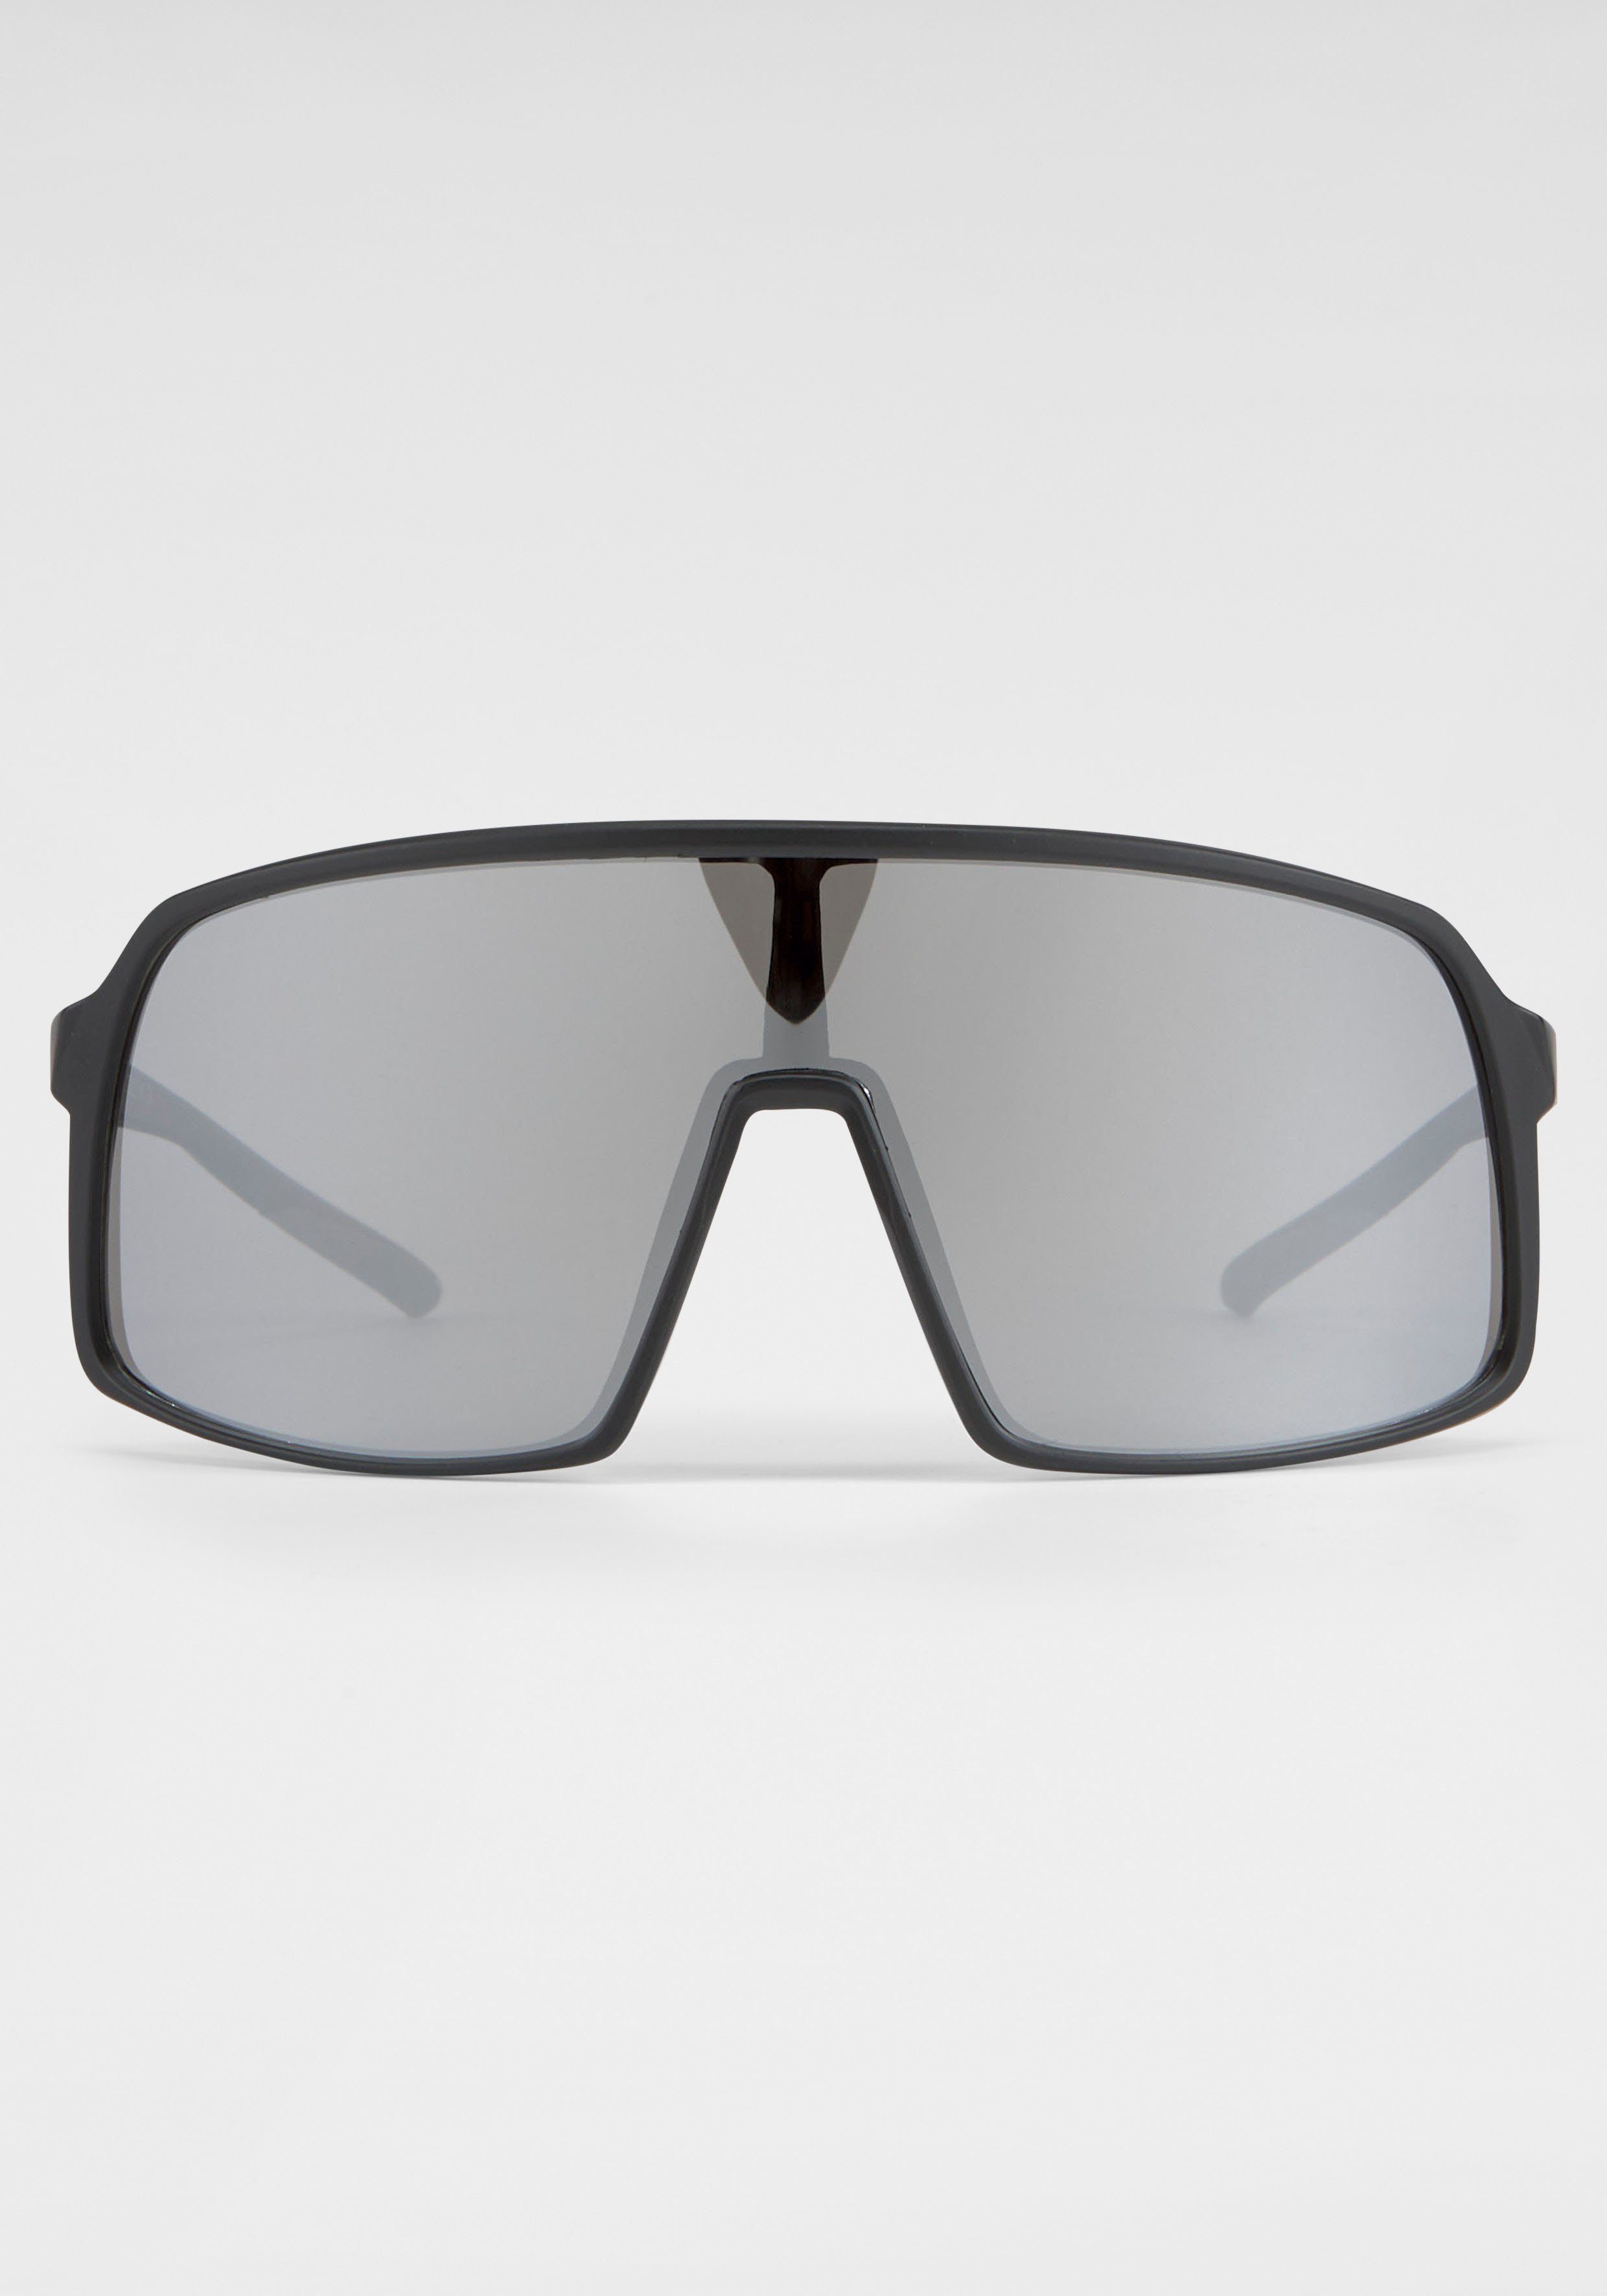 BACK IN BLACK Eyewear Sonnenbrille Gläser große schwarz-silber